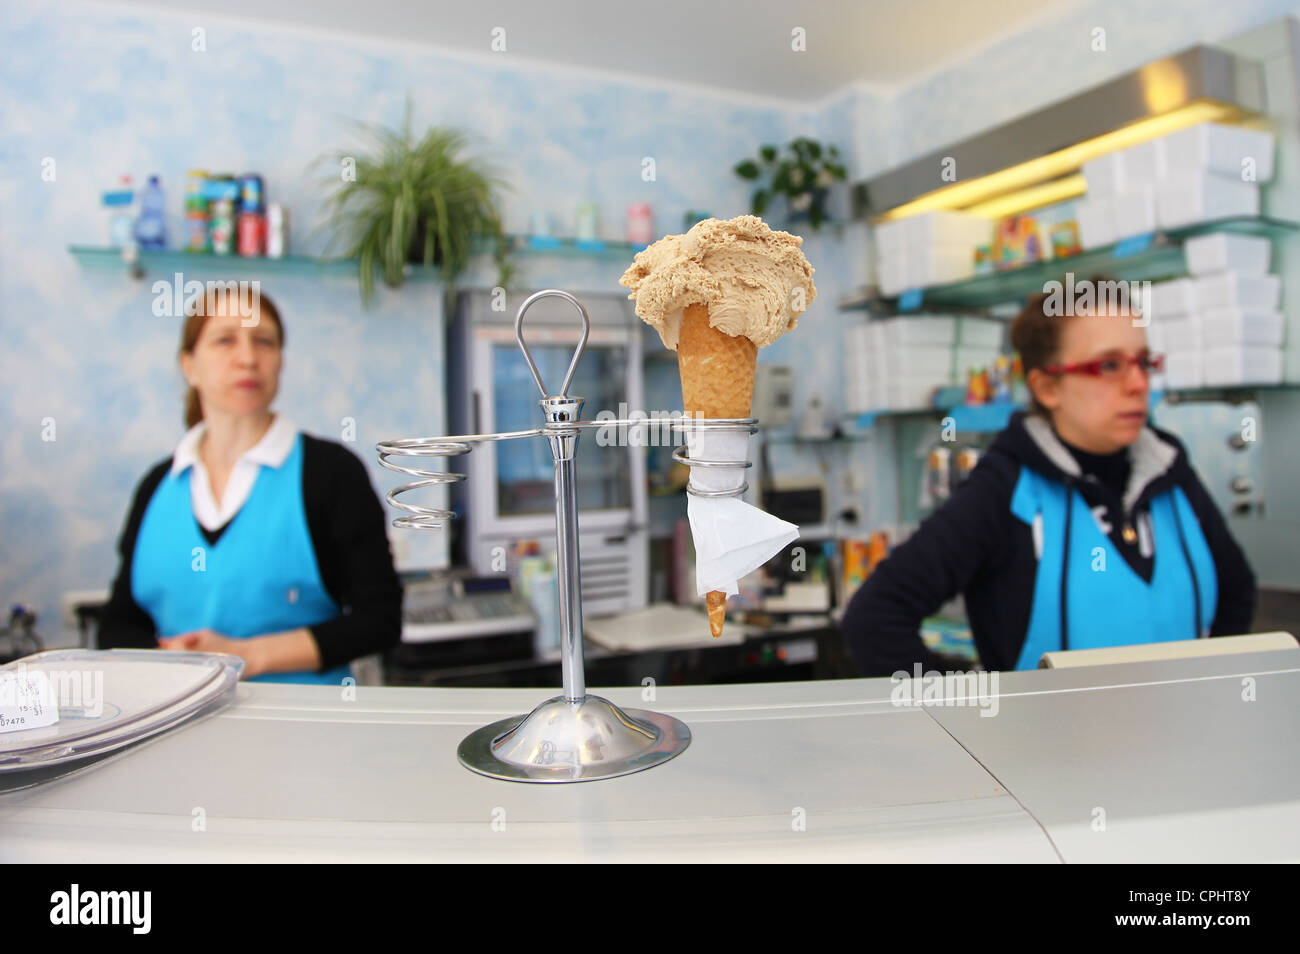 Eine italienische Eisdiele oder Gelateria serviert eine Eiswaffel oder Kornett in einem Stand auf der Theke Stockfoto